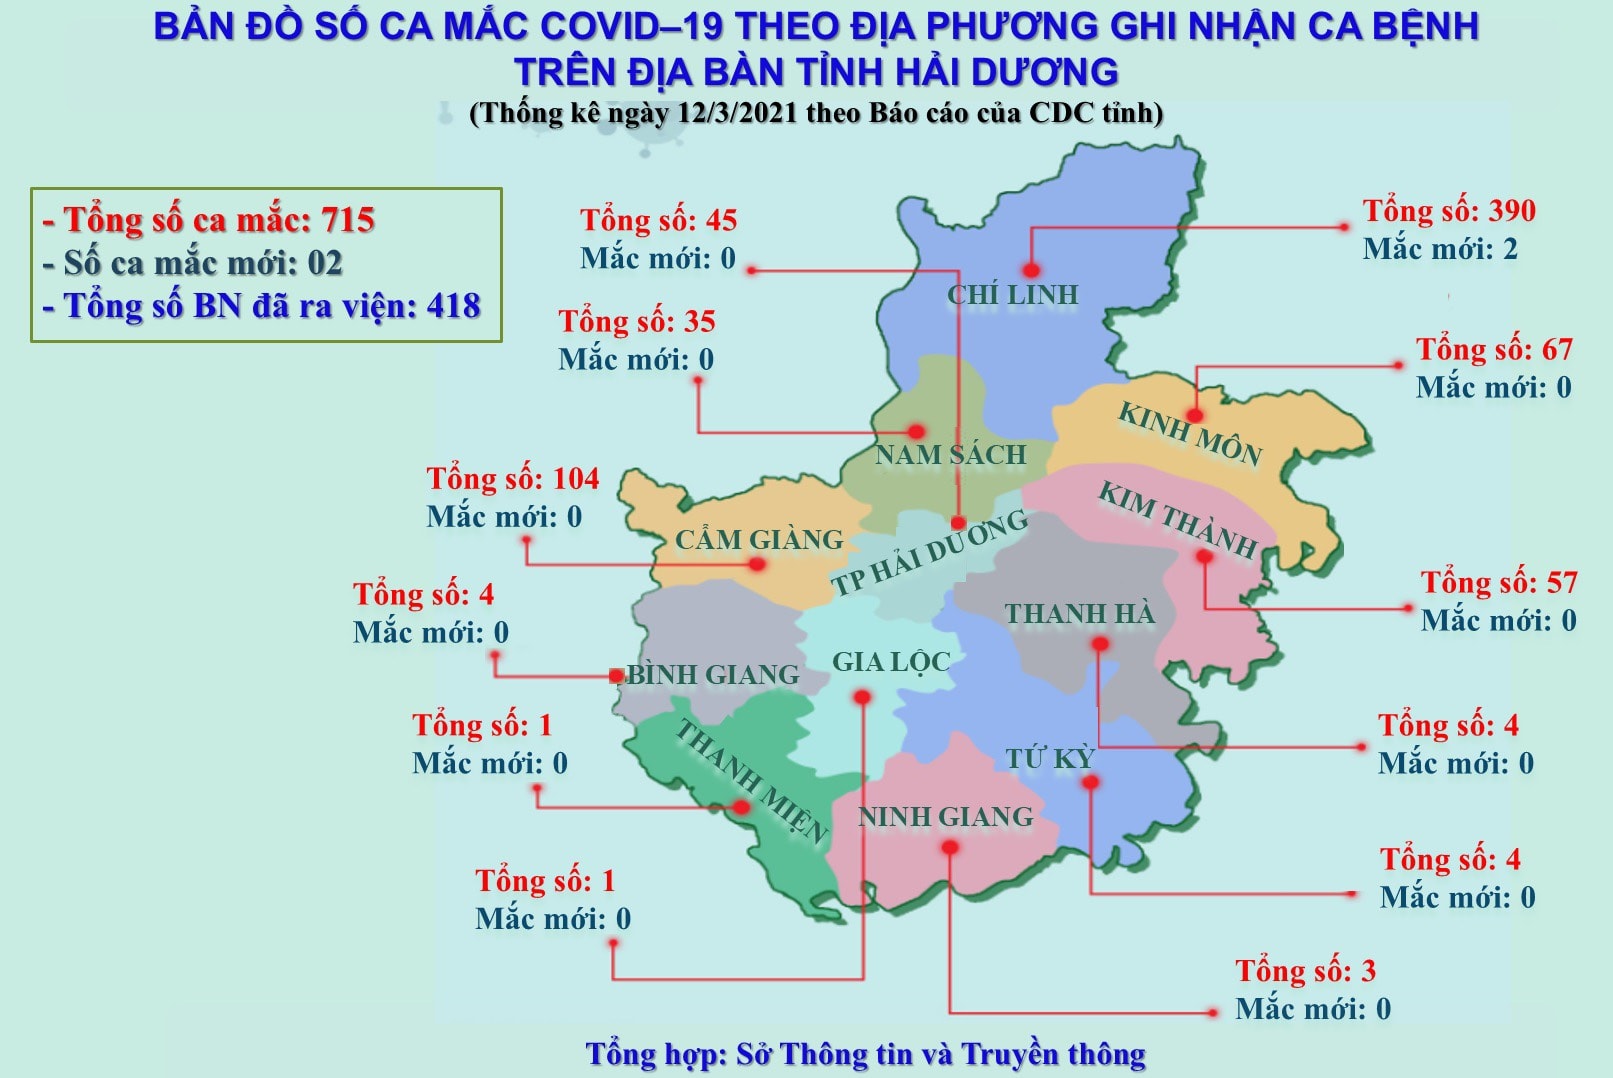 Bản đồ dịch tễ Kinh Môn Hải Dương 2024:
Năm 2024, bản đồ dịch tễ Kinh Môn (Hải Dương) cập nhật thông tin liên tục, góp phần giúp địa phương phát hiện và ứng phó nhanh chóng với các trường hợp nhiễm bệnh. Các du khách cũng sẽ hài lòng với sự an tâm và an toàn khi tham quan vùng đất này.